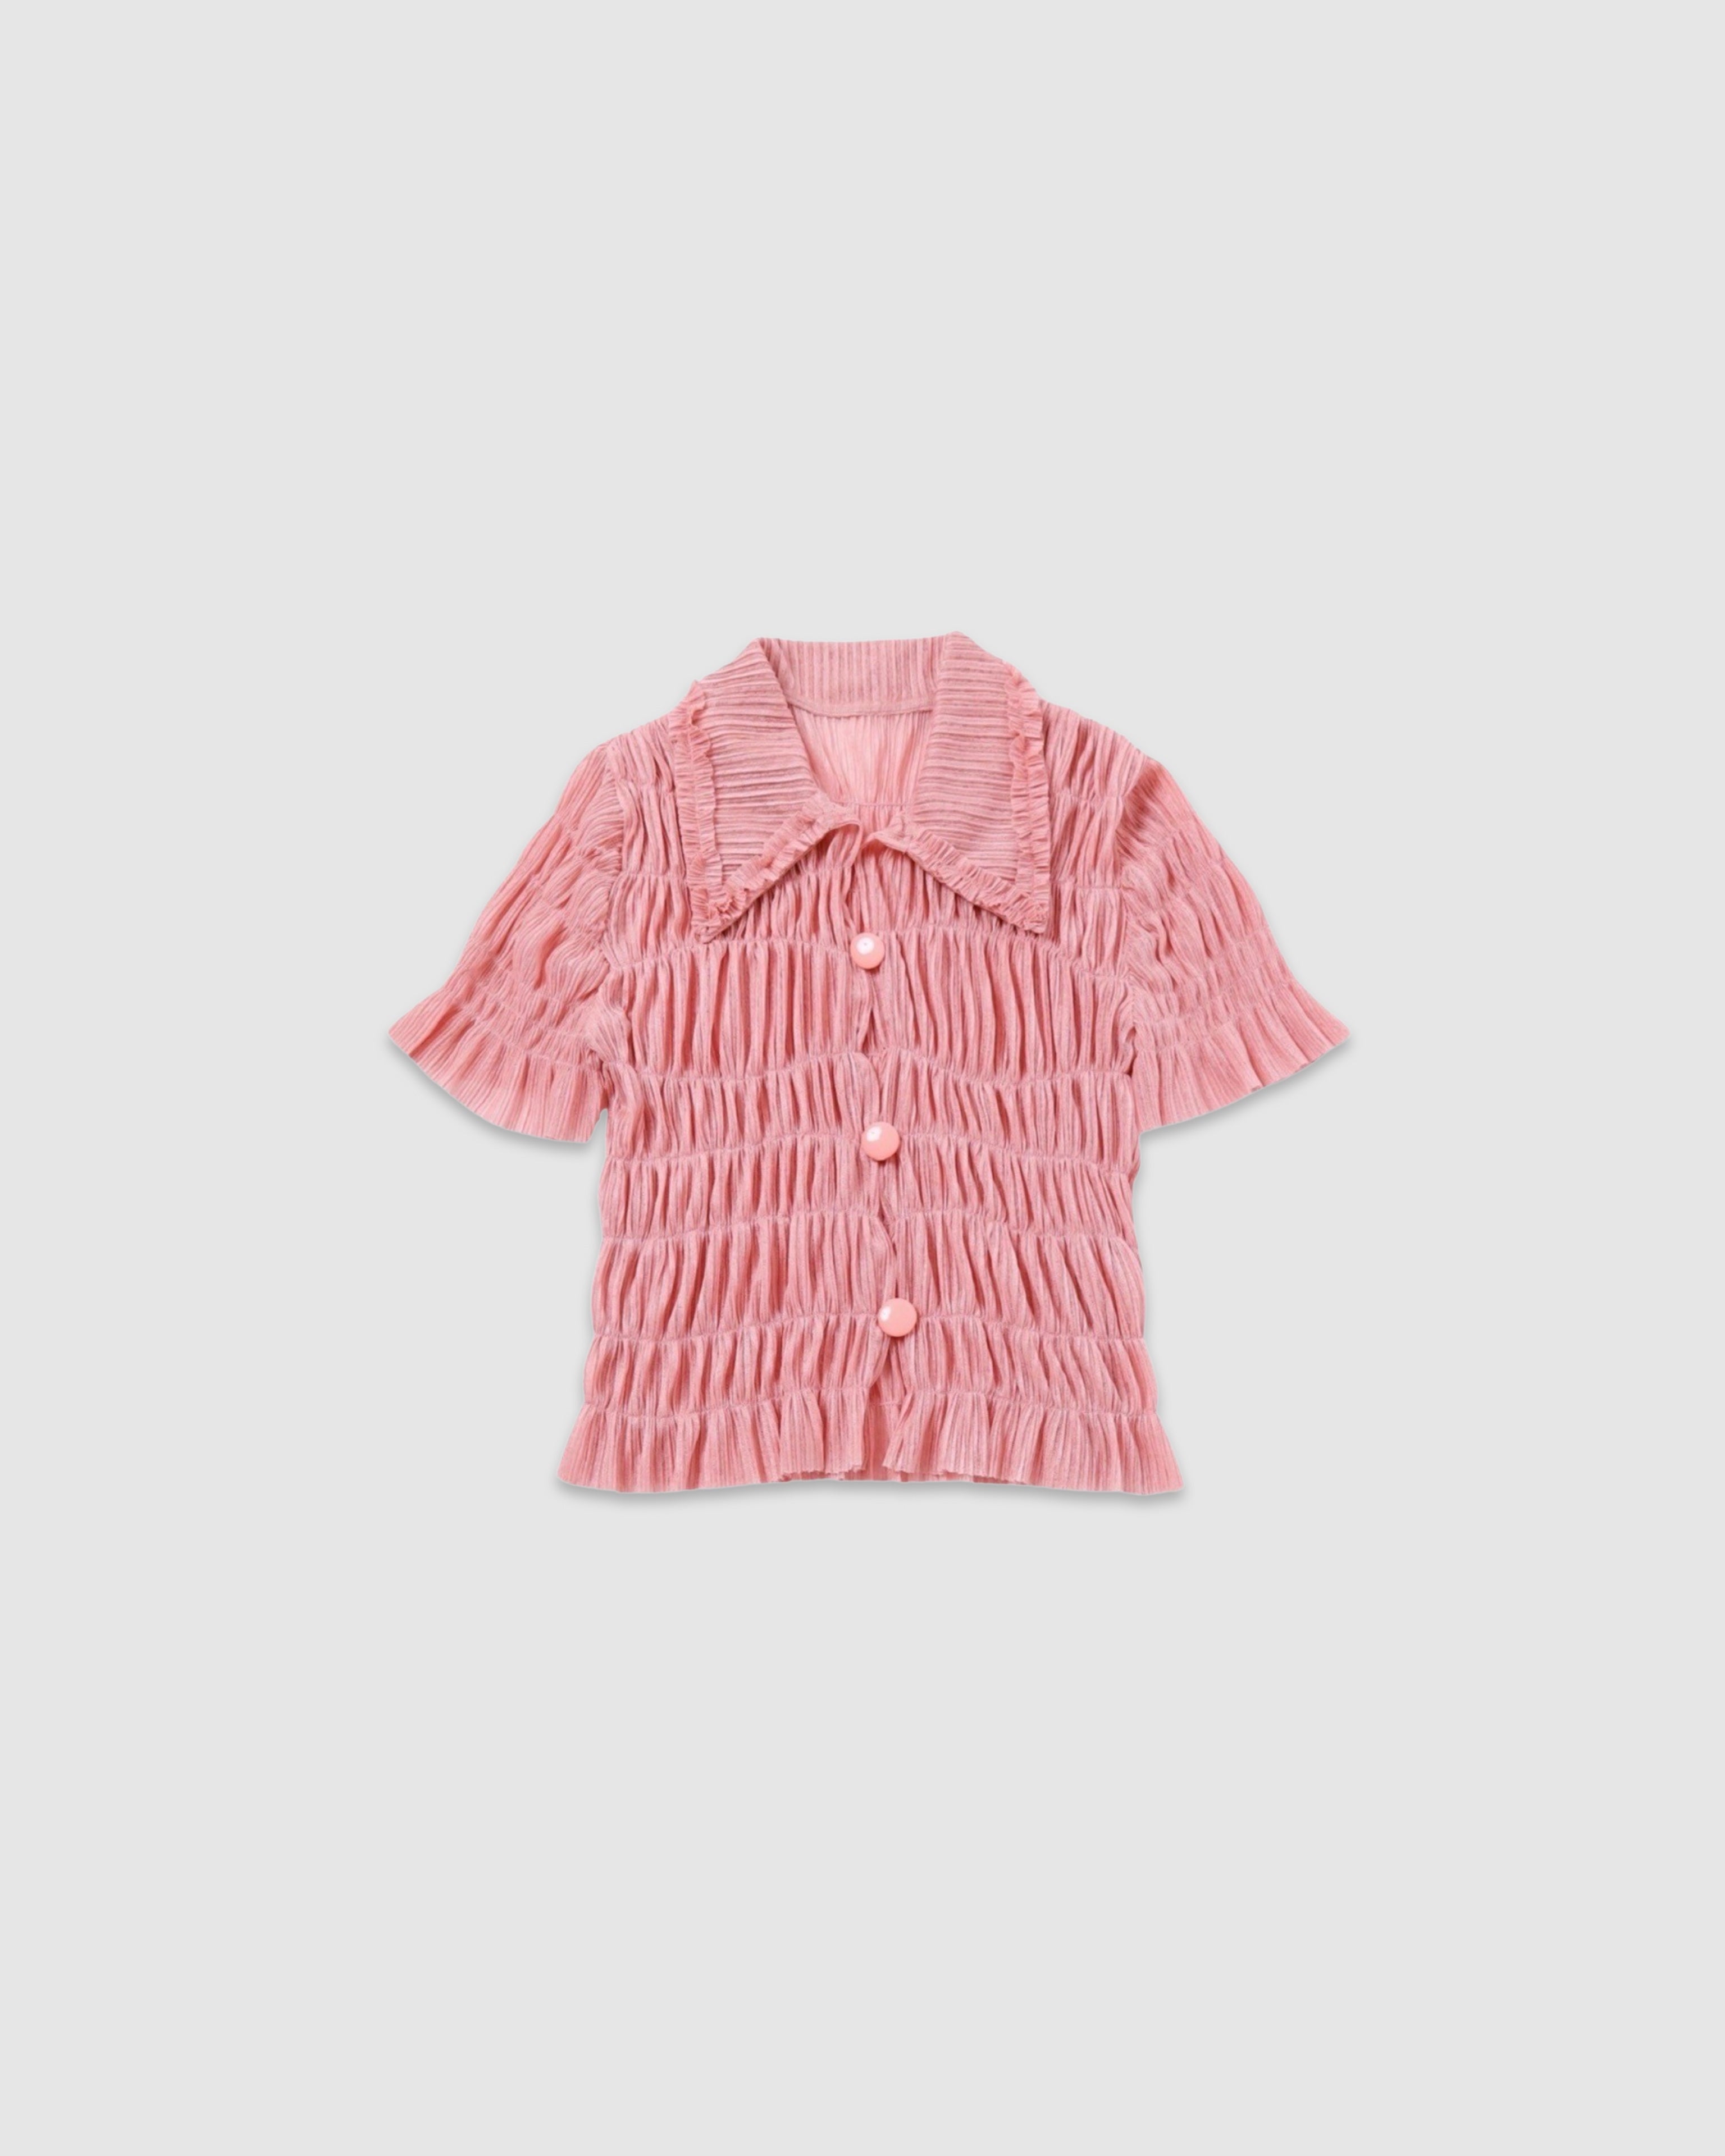 Shirring sheer shirt (pink)